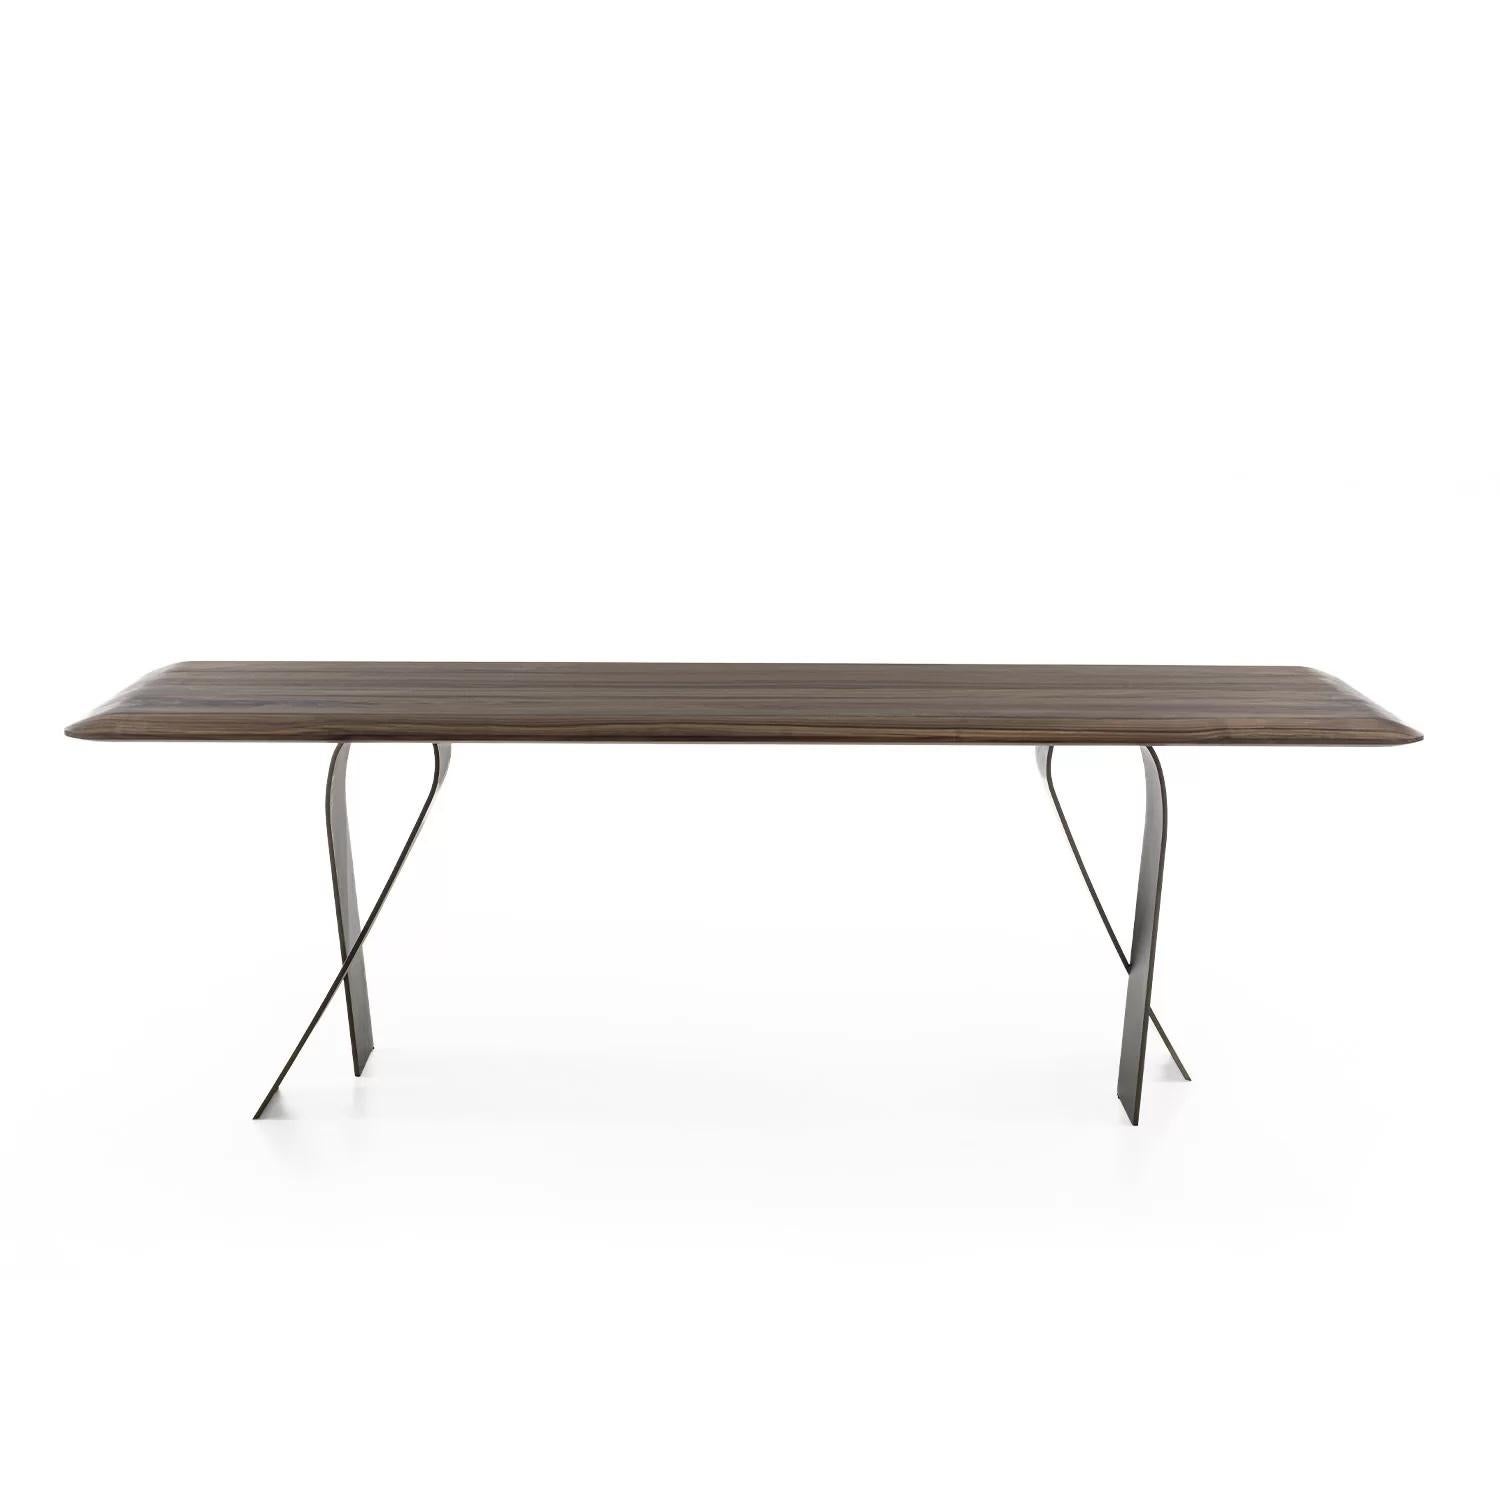 Tisch mit einer Platte aus Massivholz mit verleimten Leisten, der sich durch eine geringe Dicke auszeichnet, dank der abgeschrägten und abgerundeten Kanten, die ihm ein leichtes und gewundenes Design verleihen, gepaart mit gewundenen Eisenbeinen,